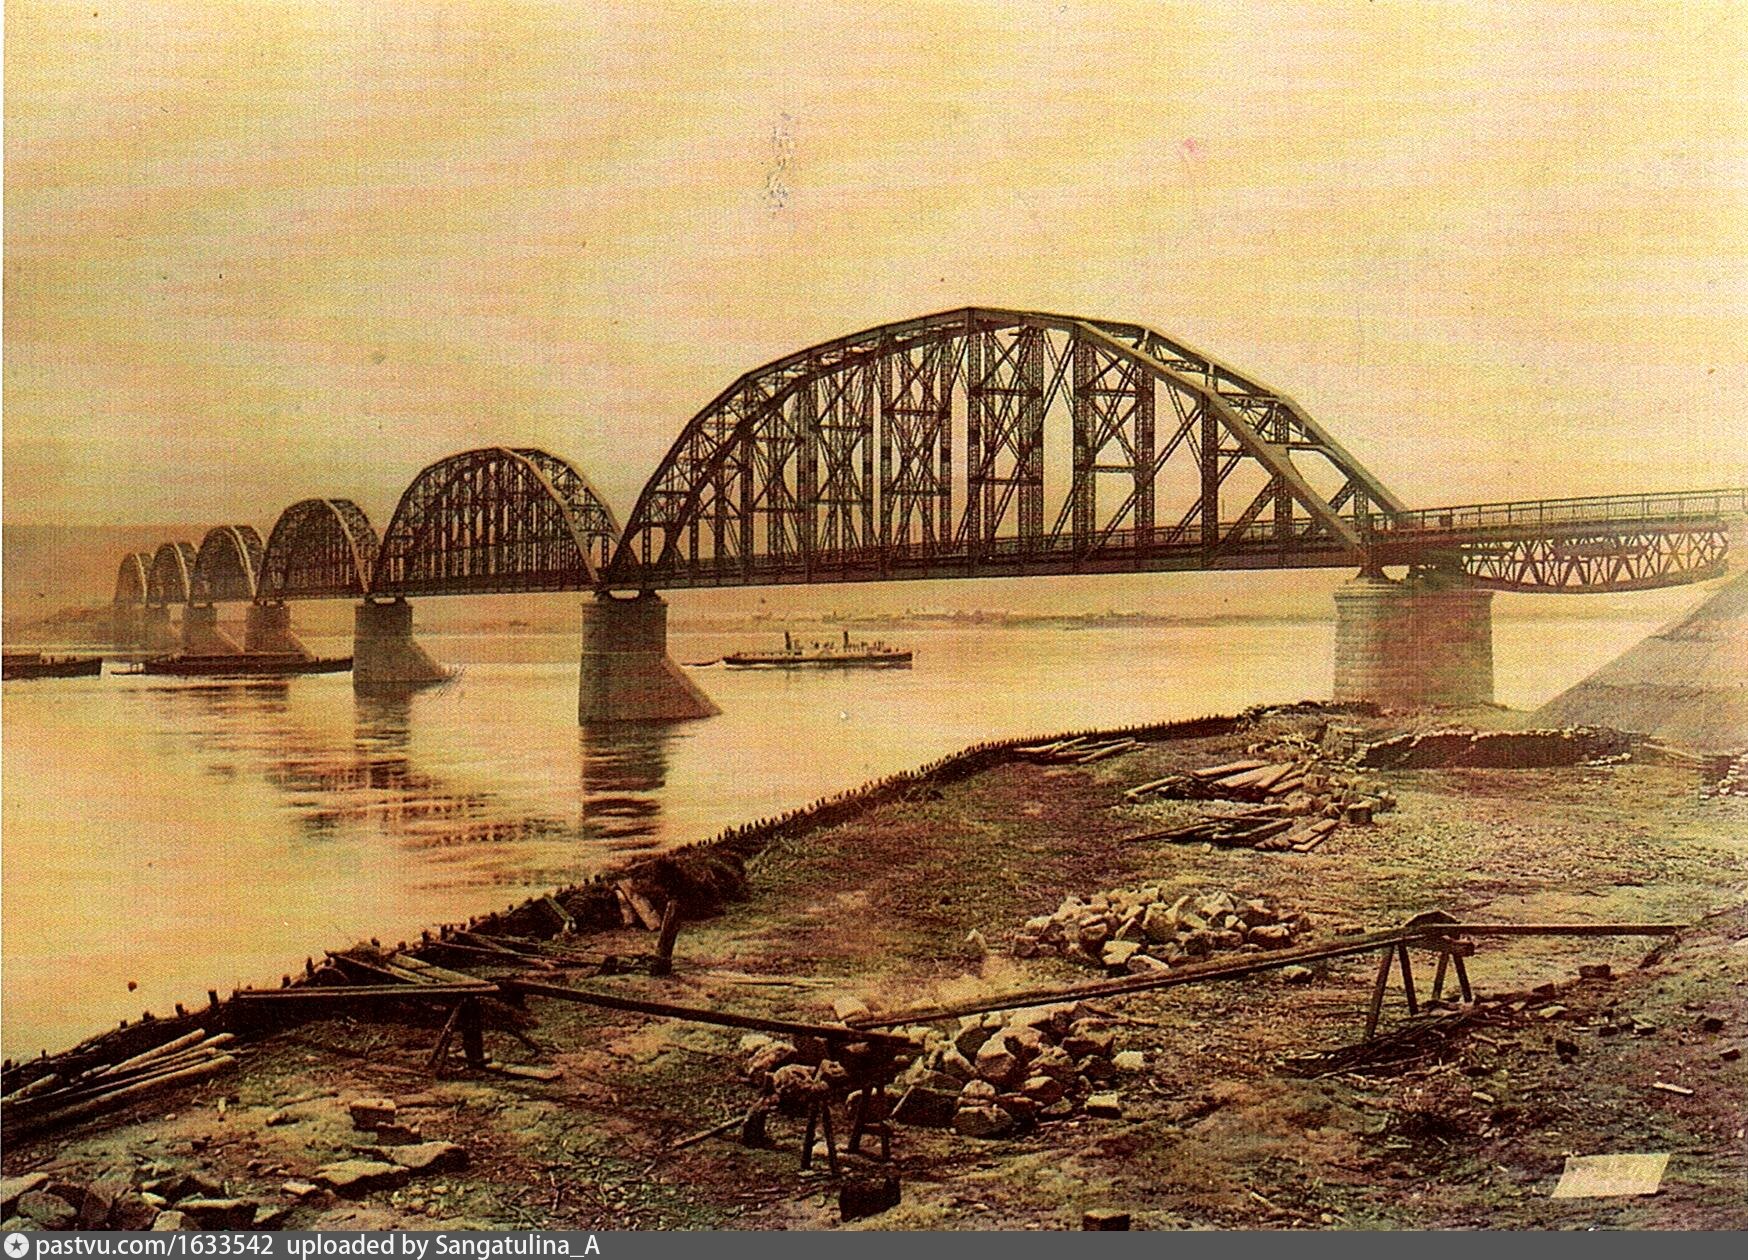 строительство железнодорожного моста соединяющего левый и правый берега реки на территории еао